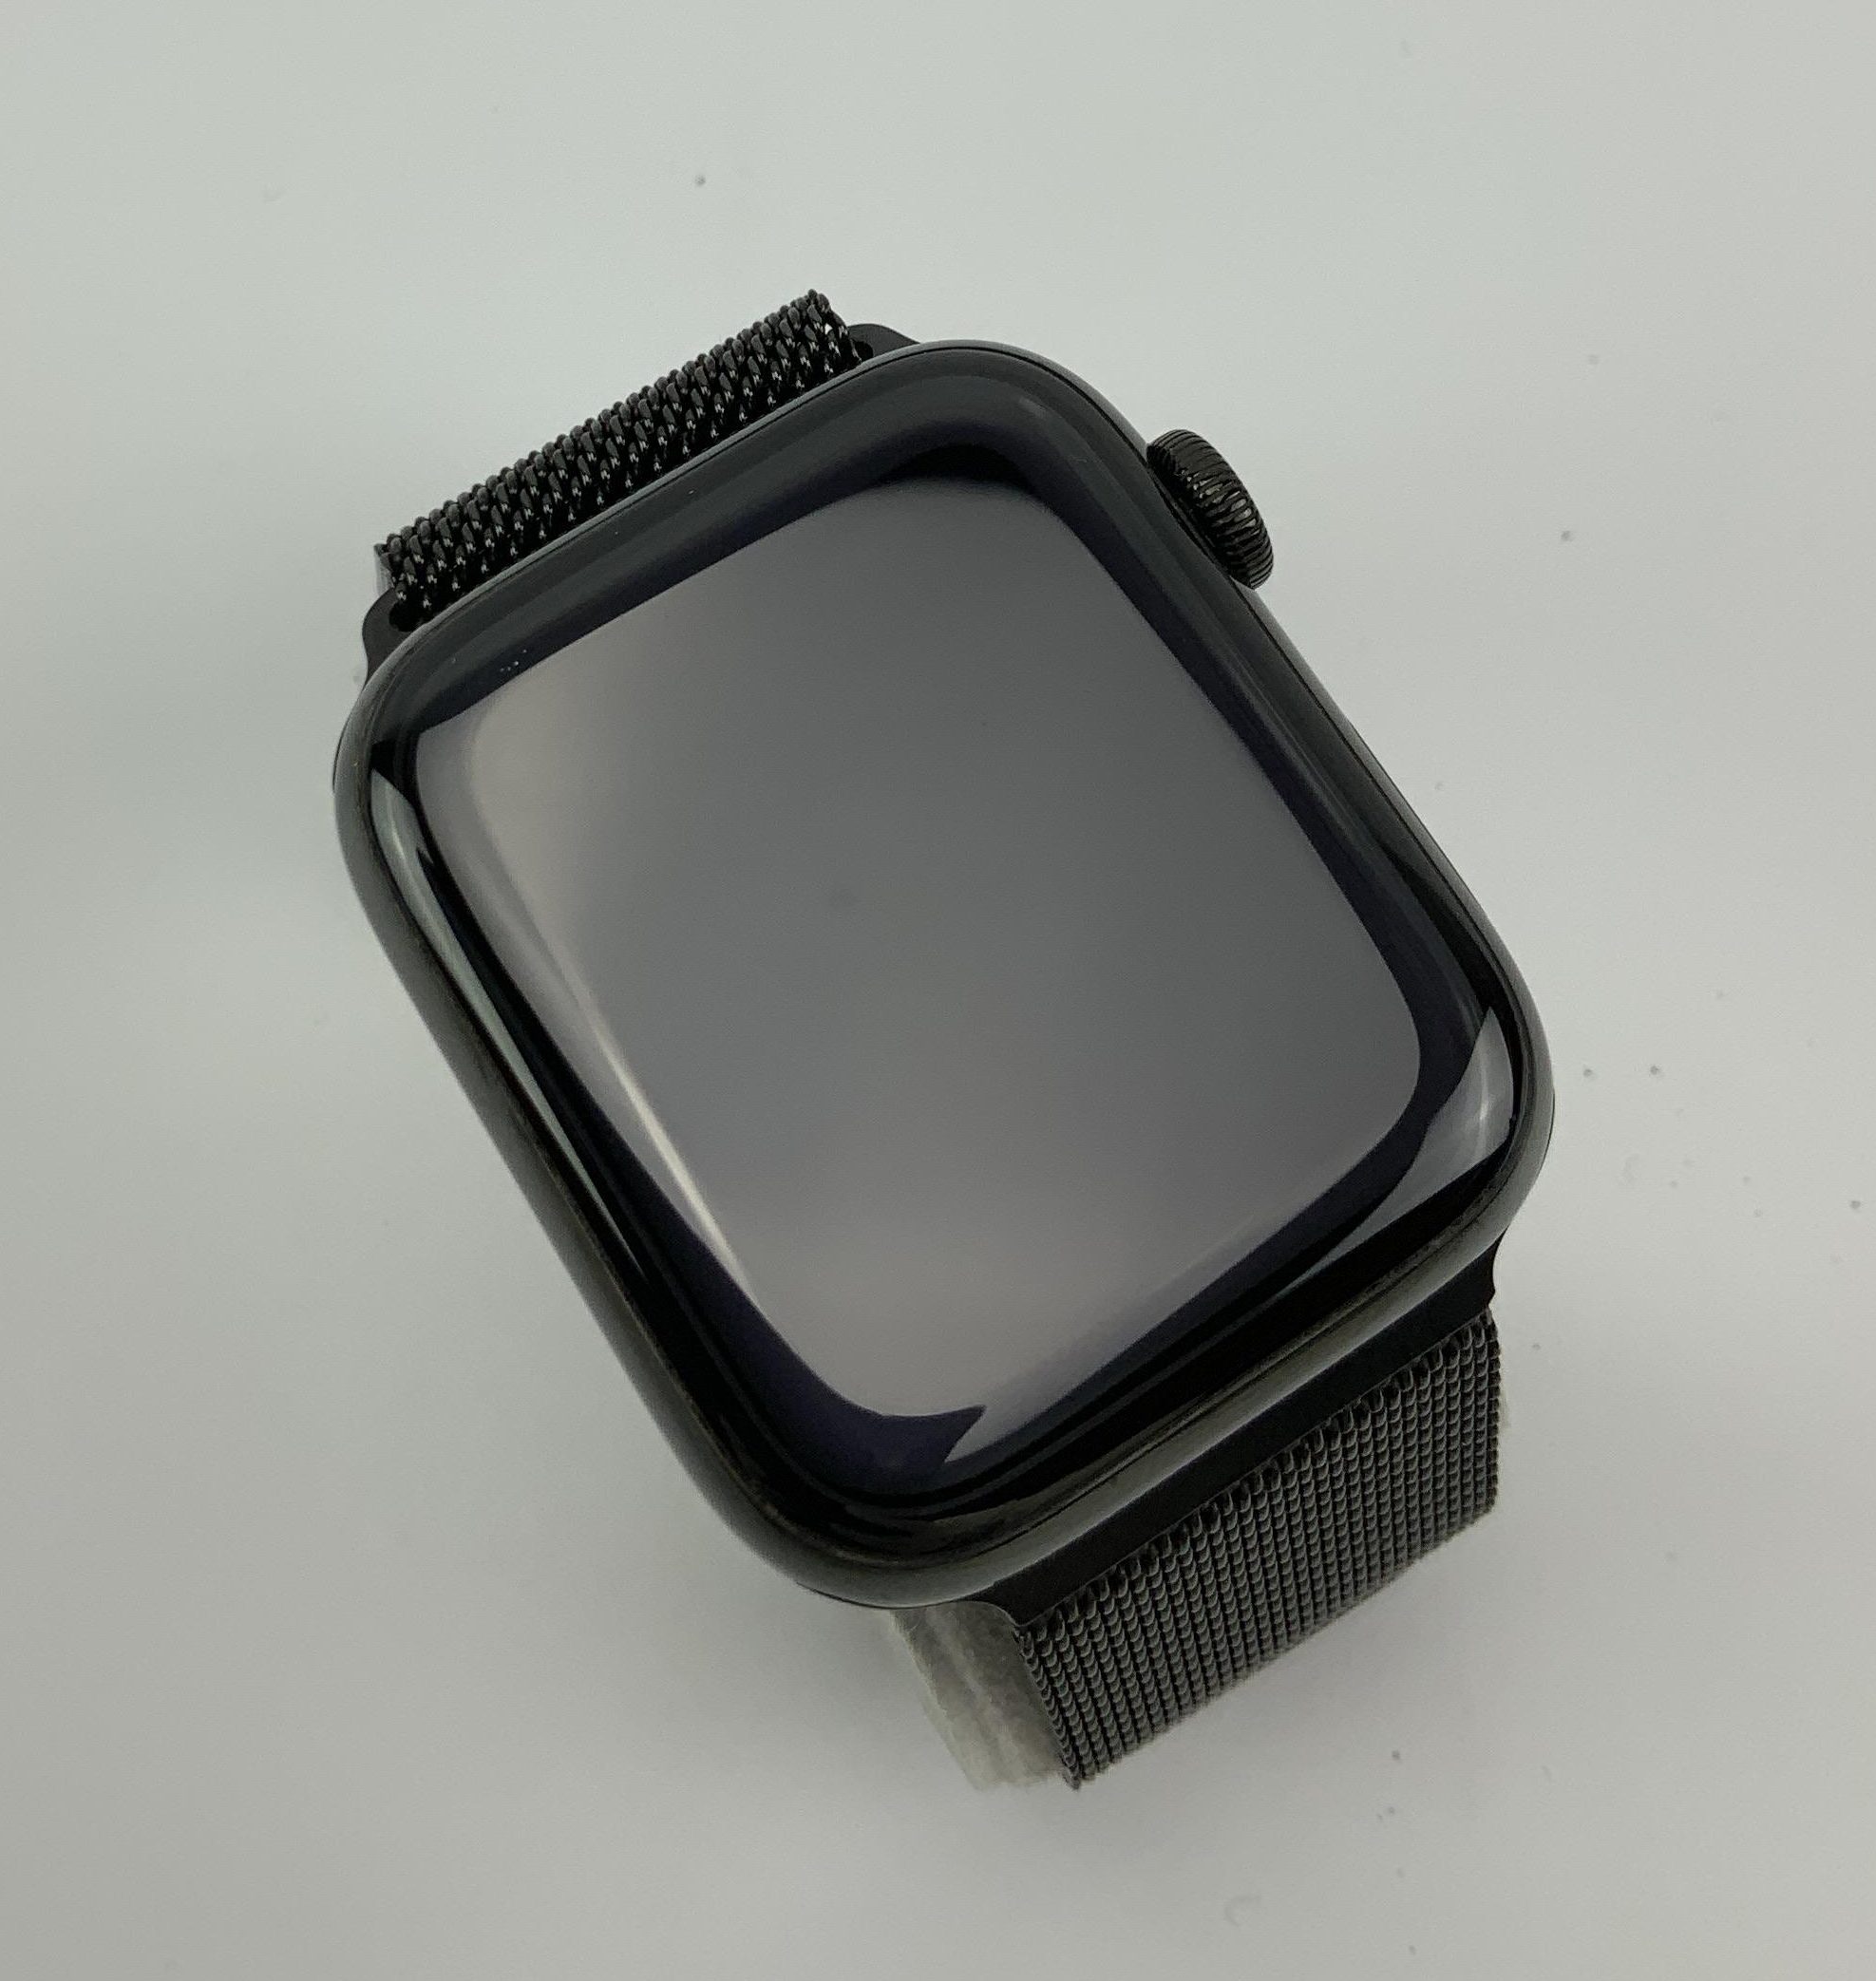 Watch Series 4 Steel Cellular (44mm), Space Black, Space Black Milanese Loop, Kuva 3